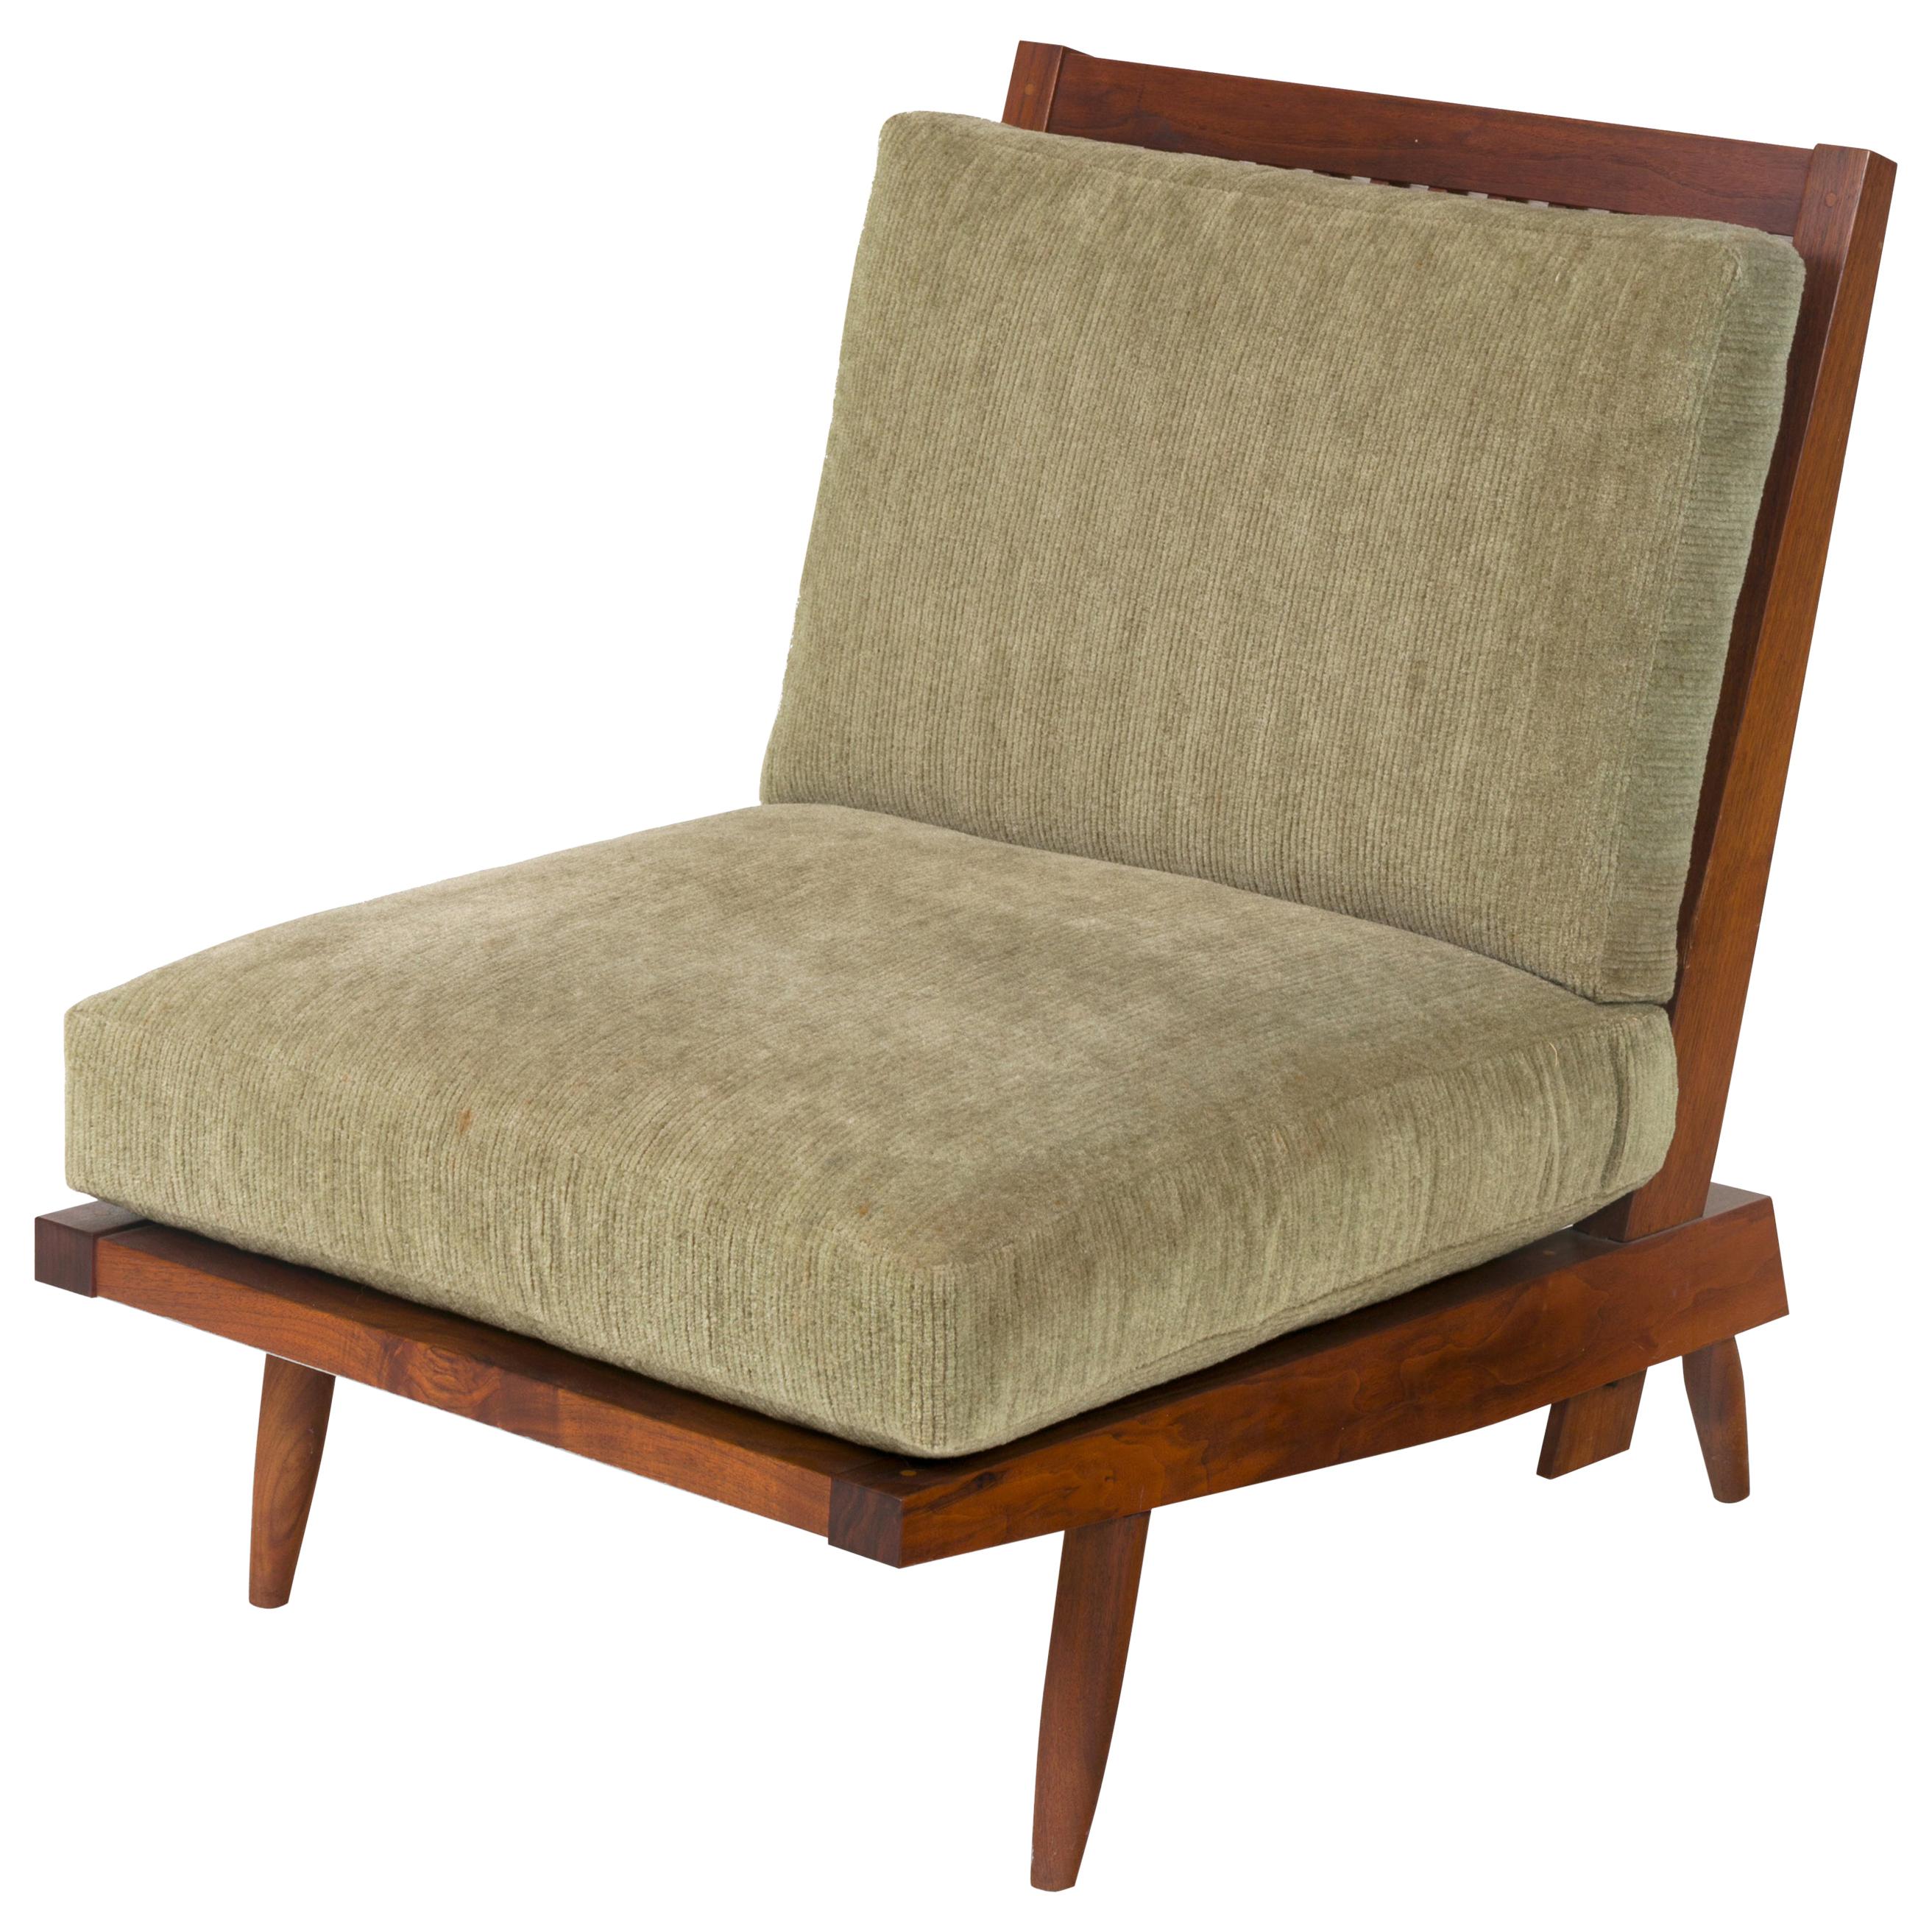 George Nakashima Walnut "Cushion Chair", USA 1960s